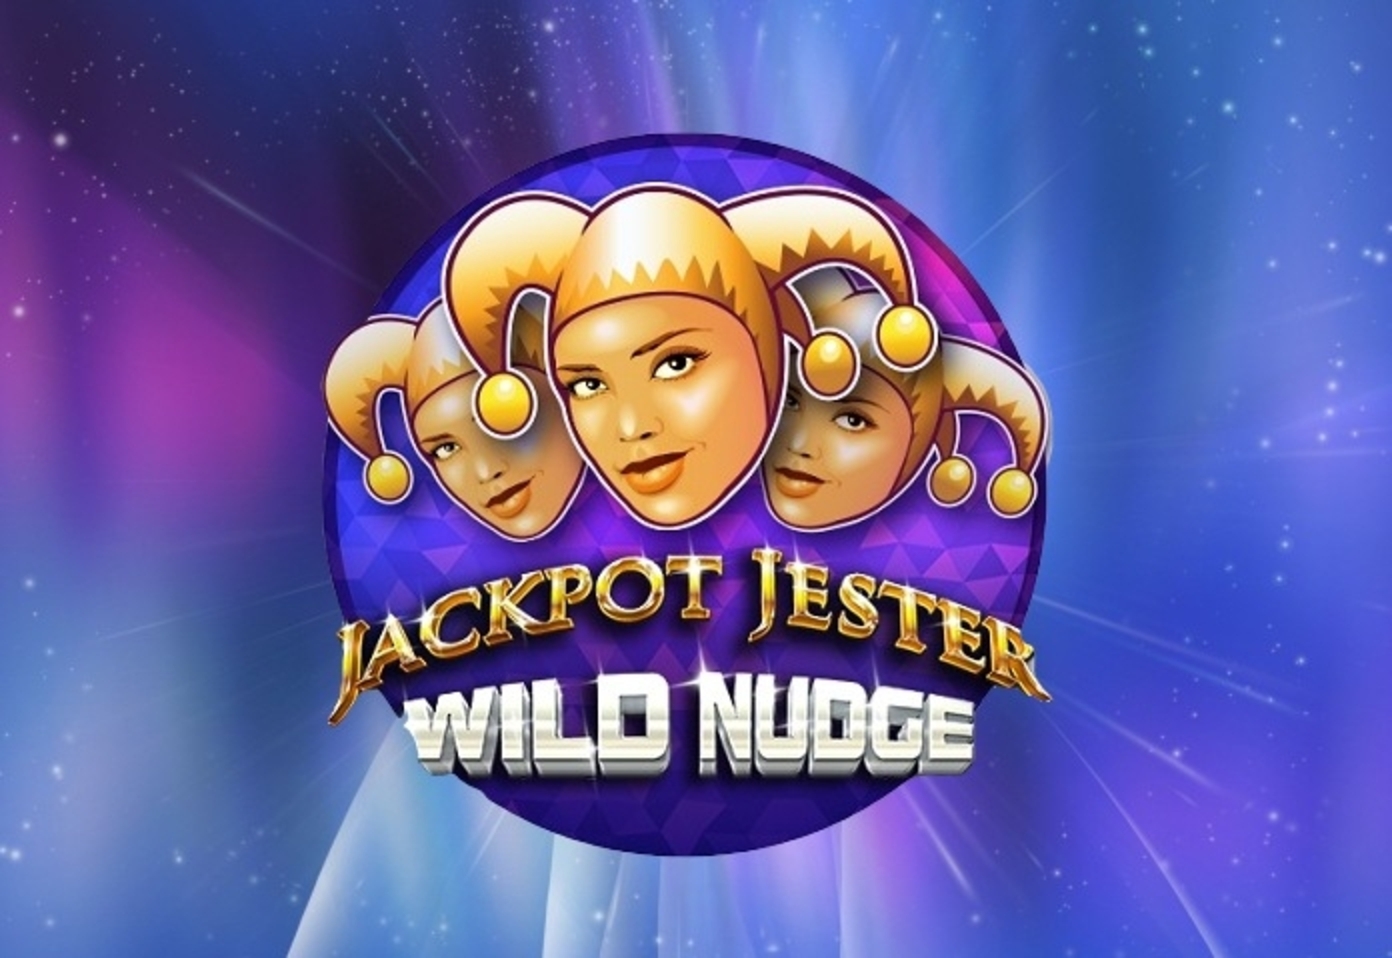 Jackpot Jester Wild Nudge demo